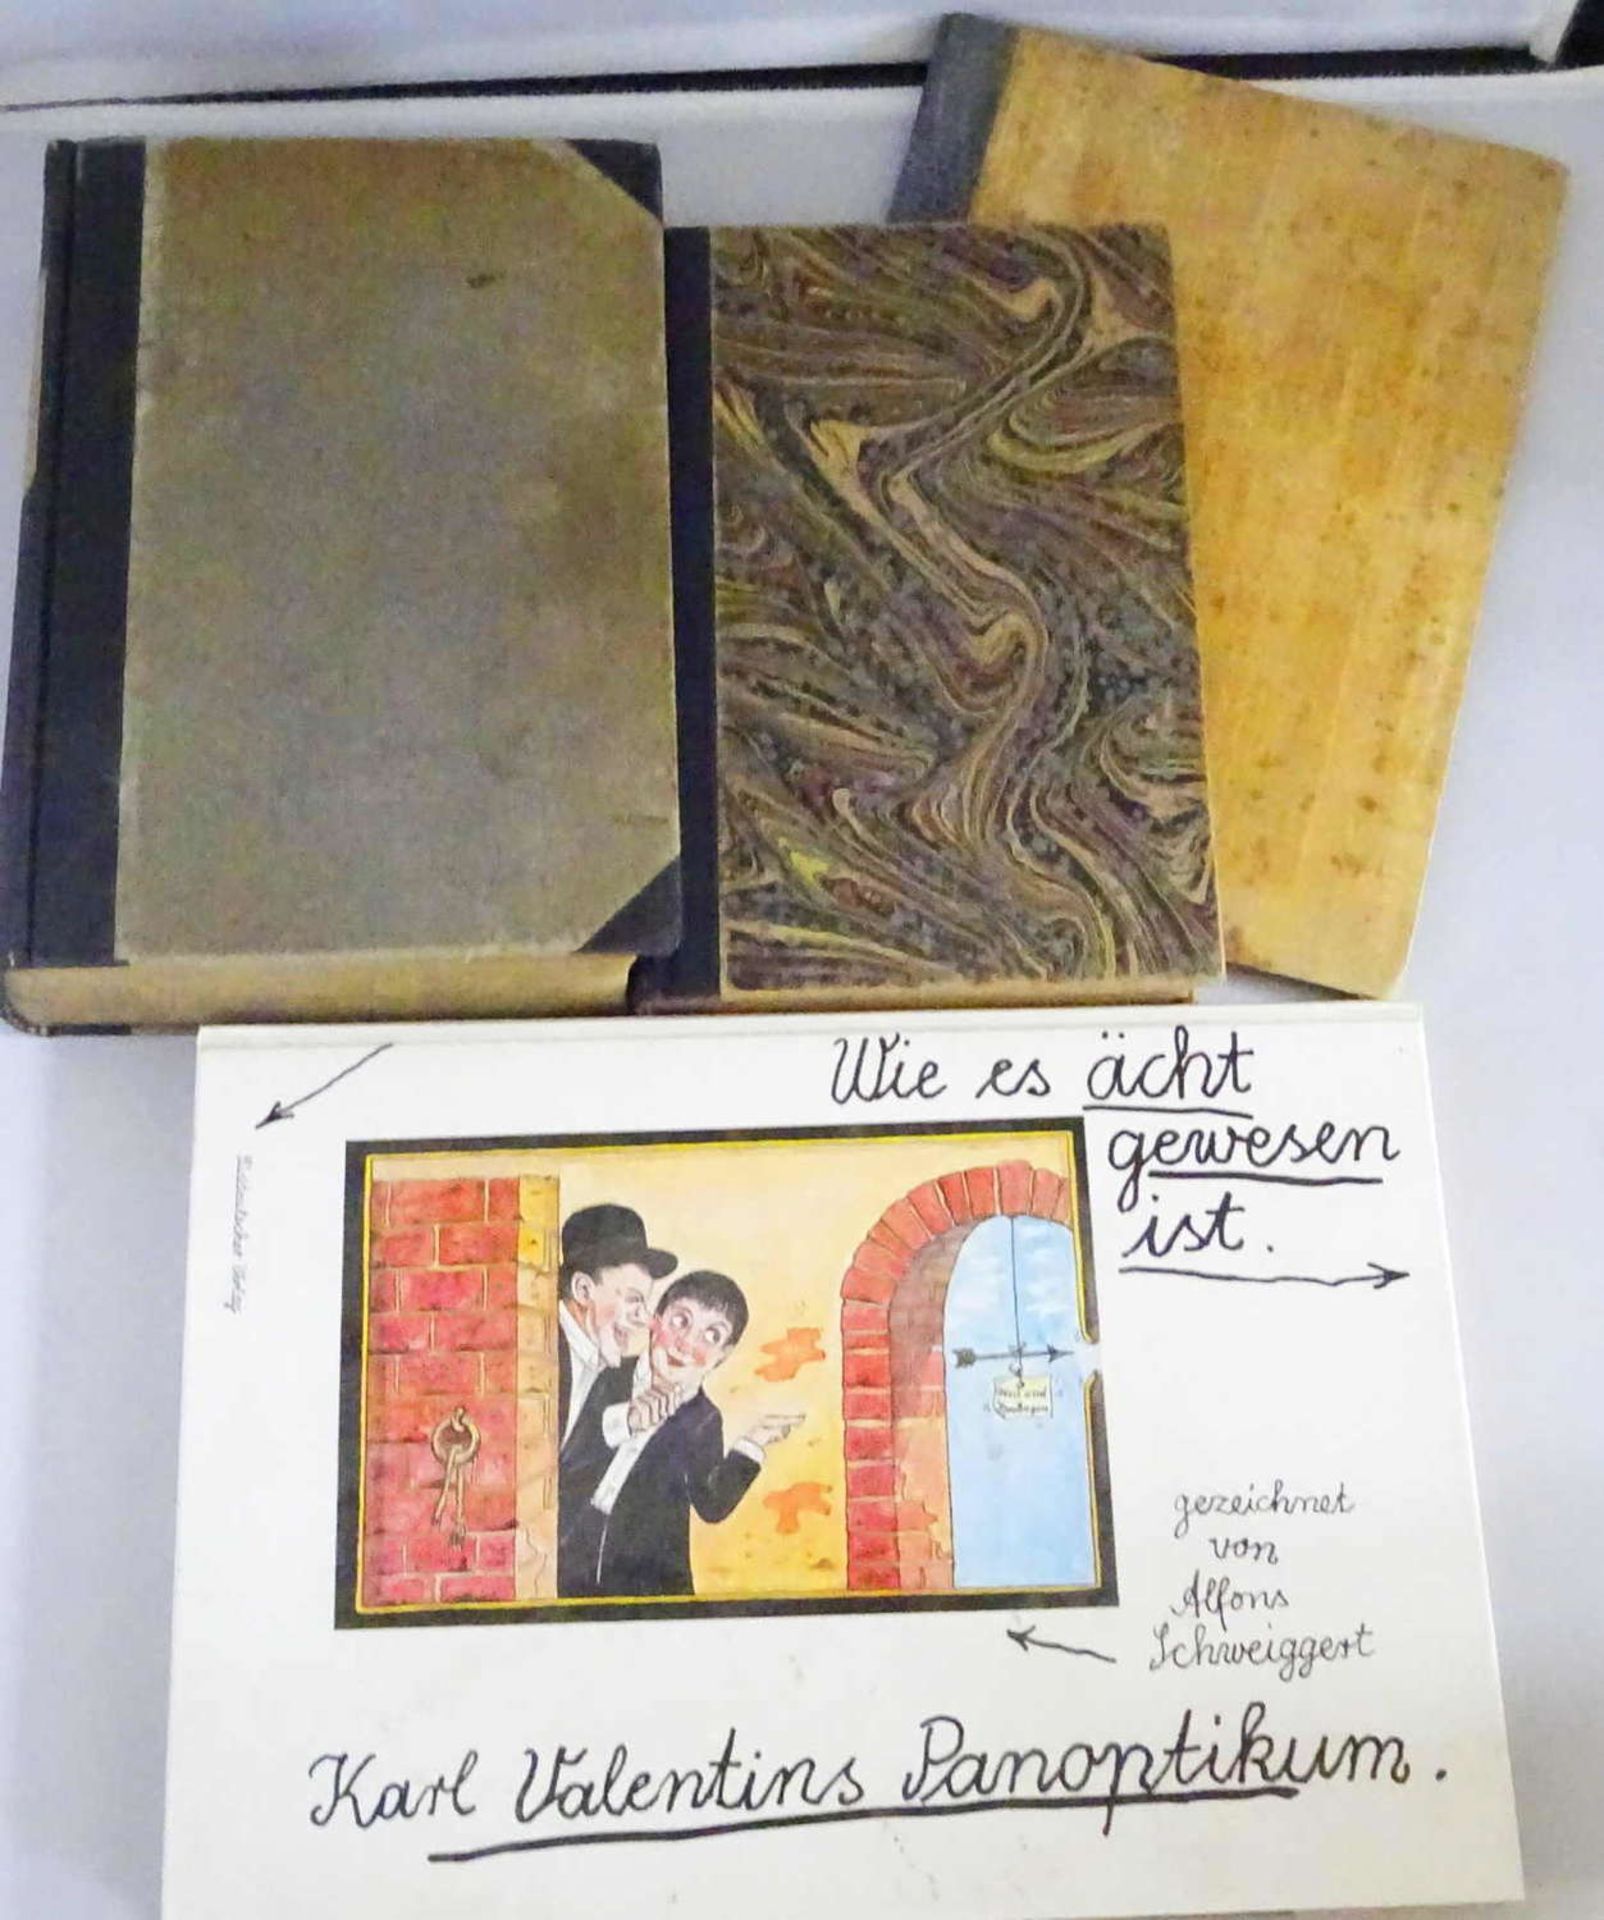 Lot Bücher, dabei "Gros und die Evangelien" 1922, "Schillers sämtliche Werke" 1869, "